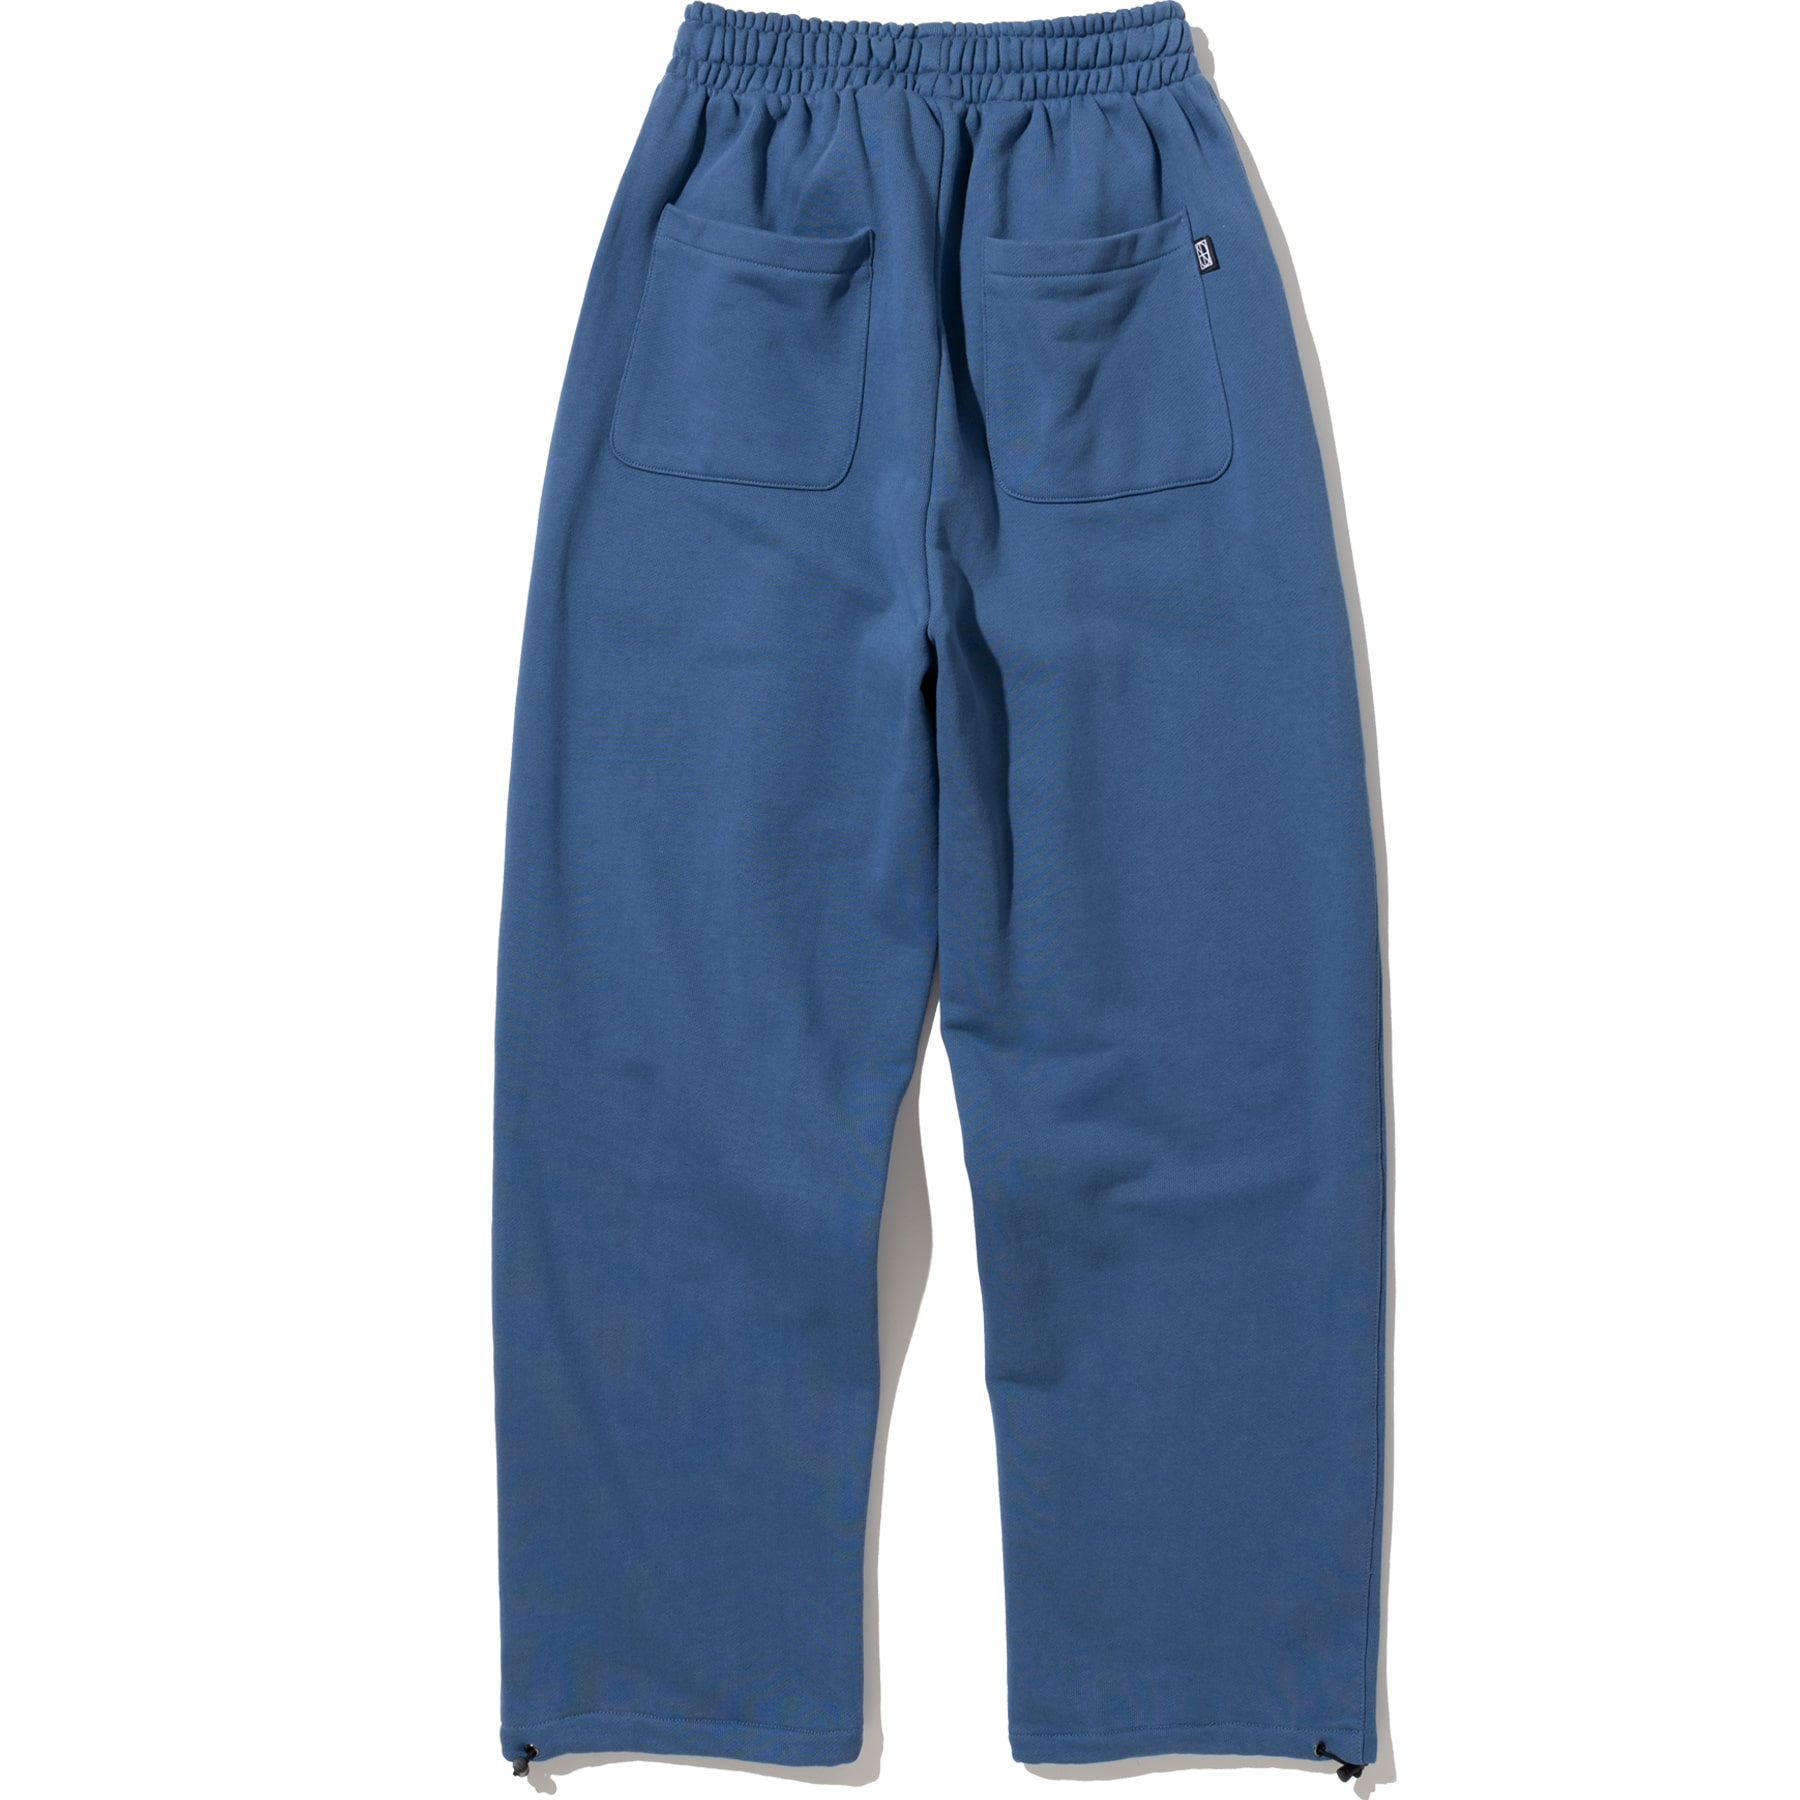 Brush NFND Logo String Sweat Pants - Indigo Blue,NOT4NERD